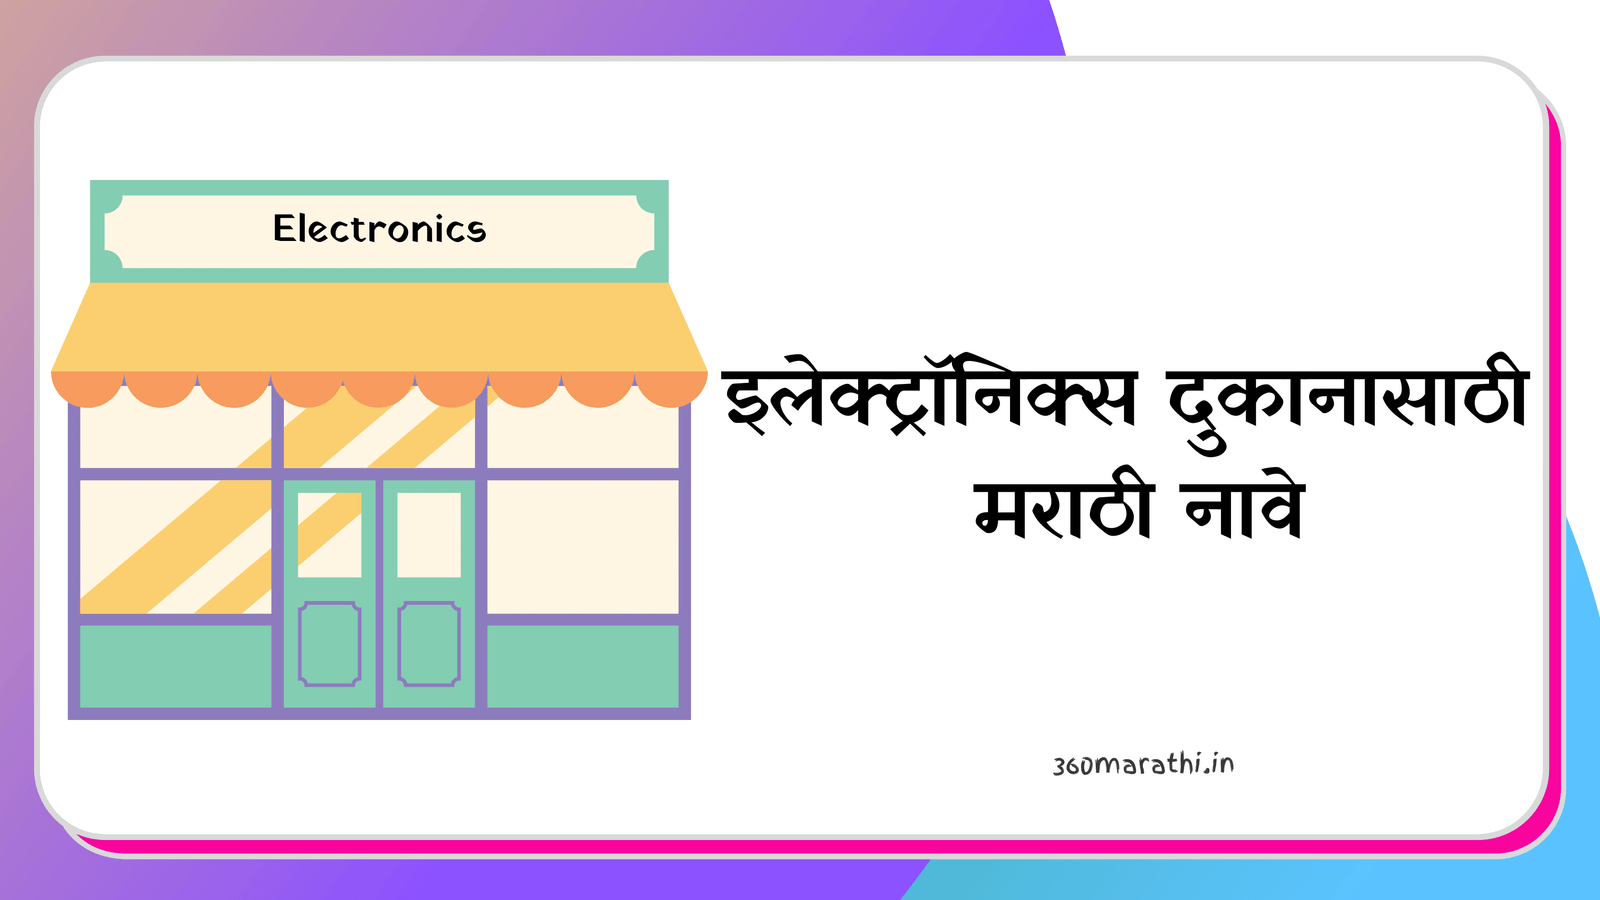 Electronics Shop name ideas in Marathi